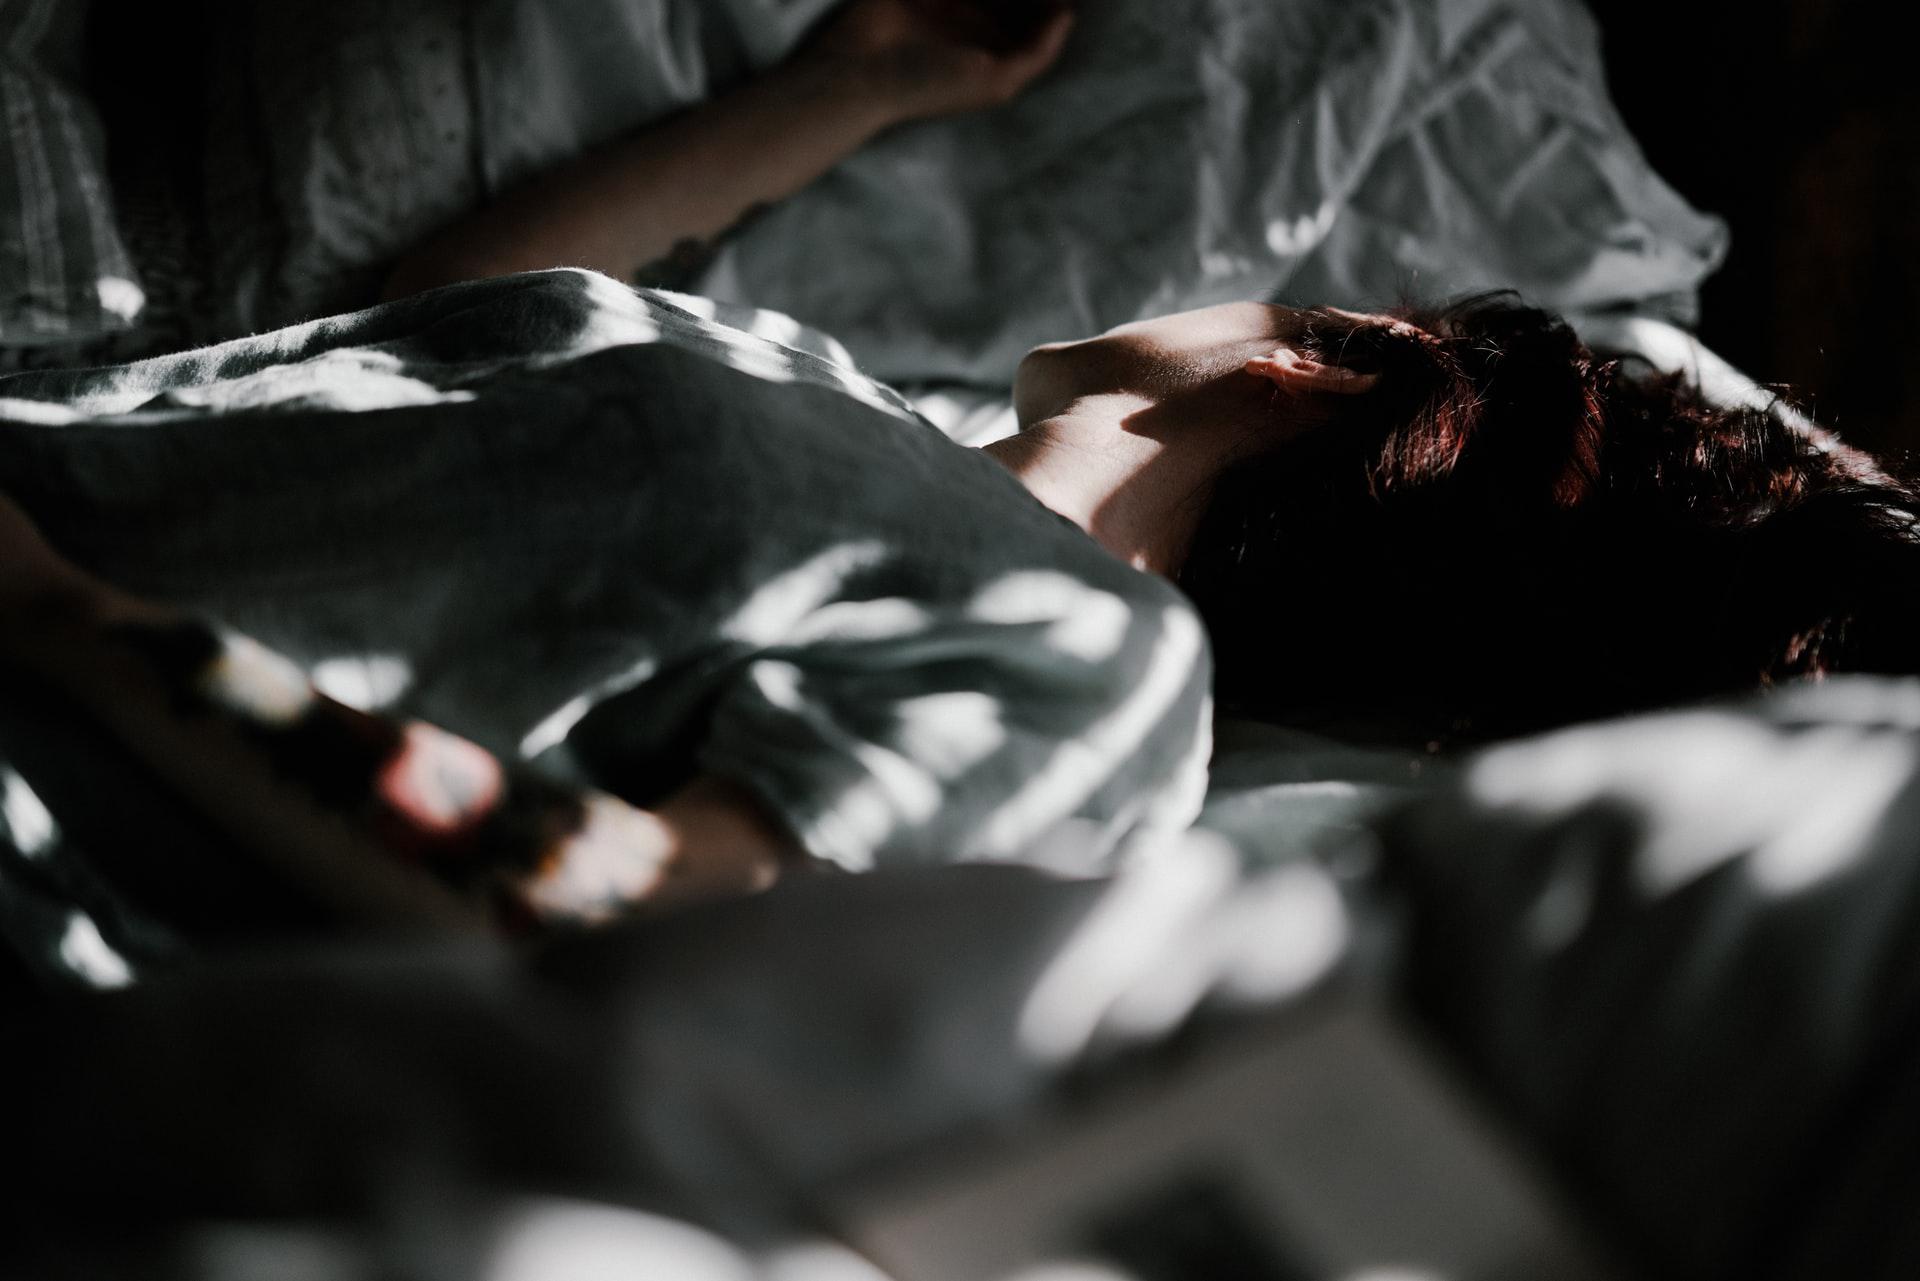 A dark and quiet environment promotes good sleep hygiene (Source: Unplash/Annie Spratt)